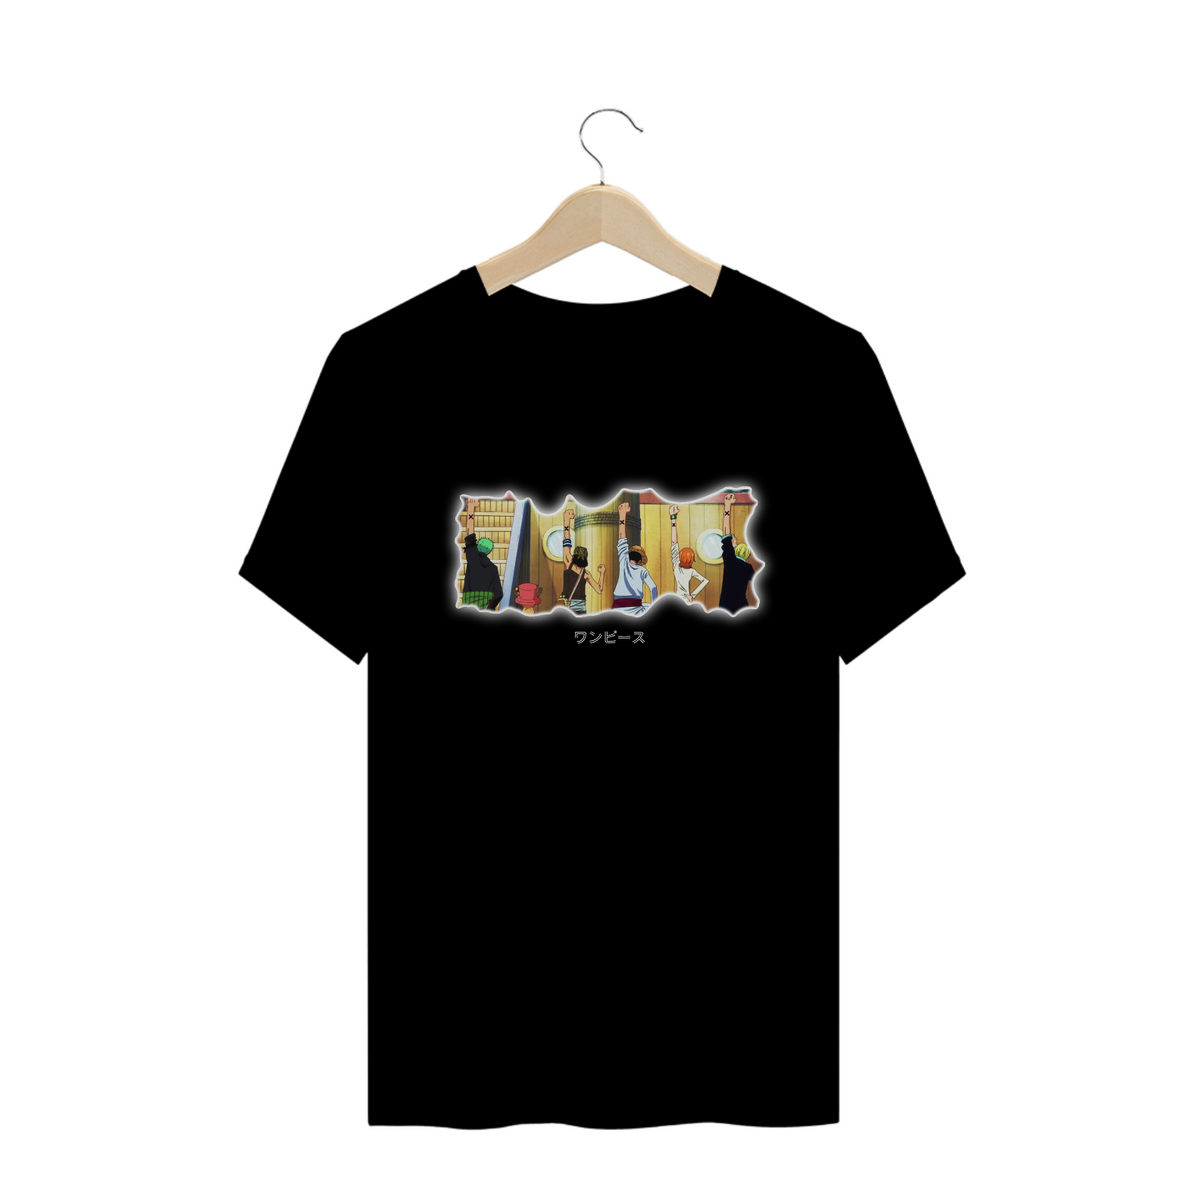 Nome do produto: T-shirt One Piece - Companheiros (brilho claro)